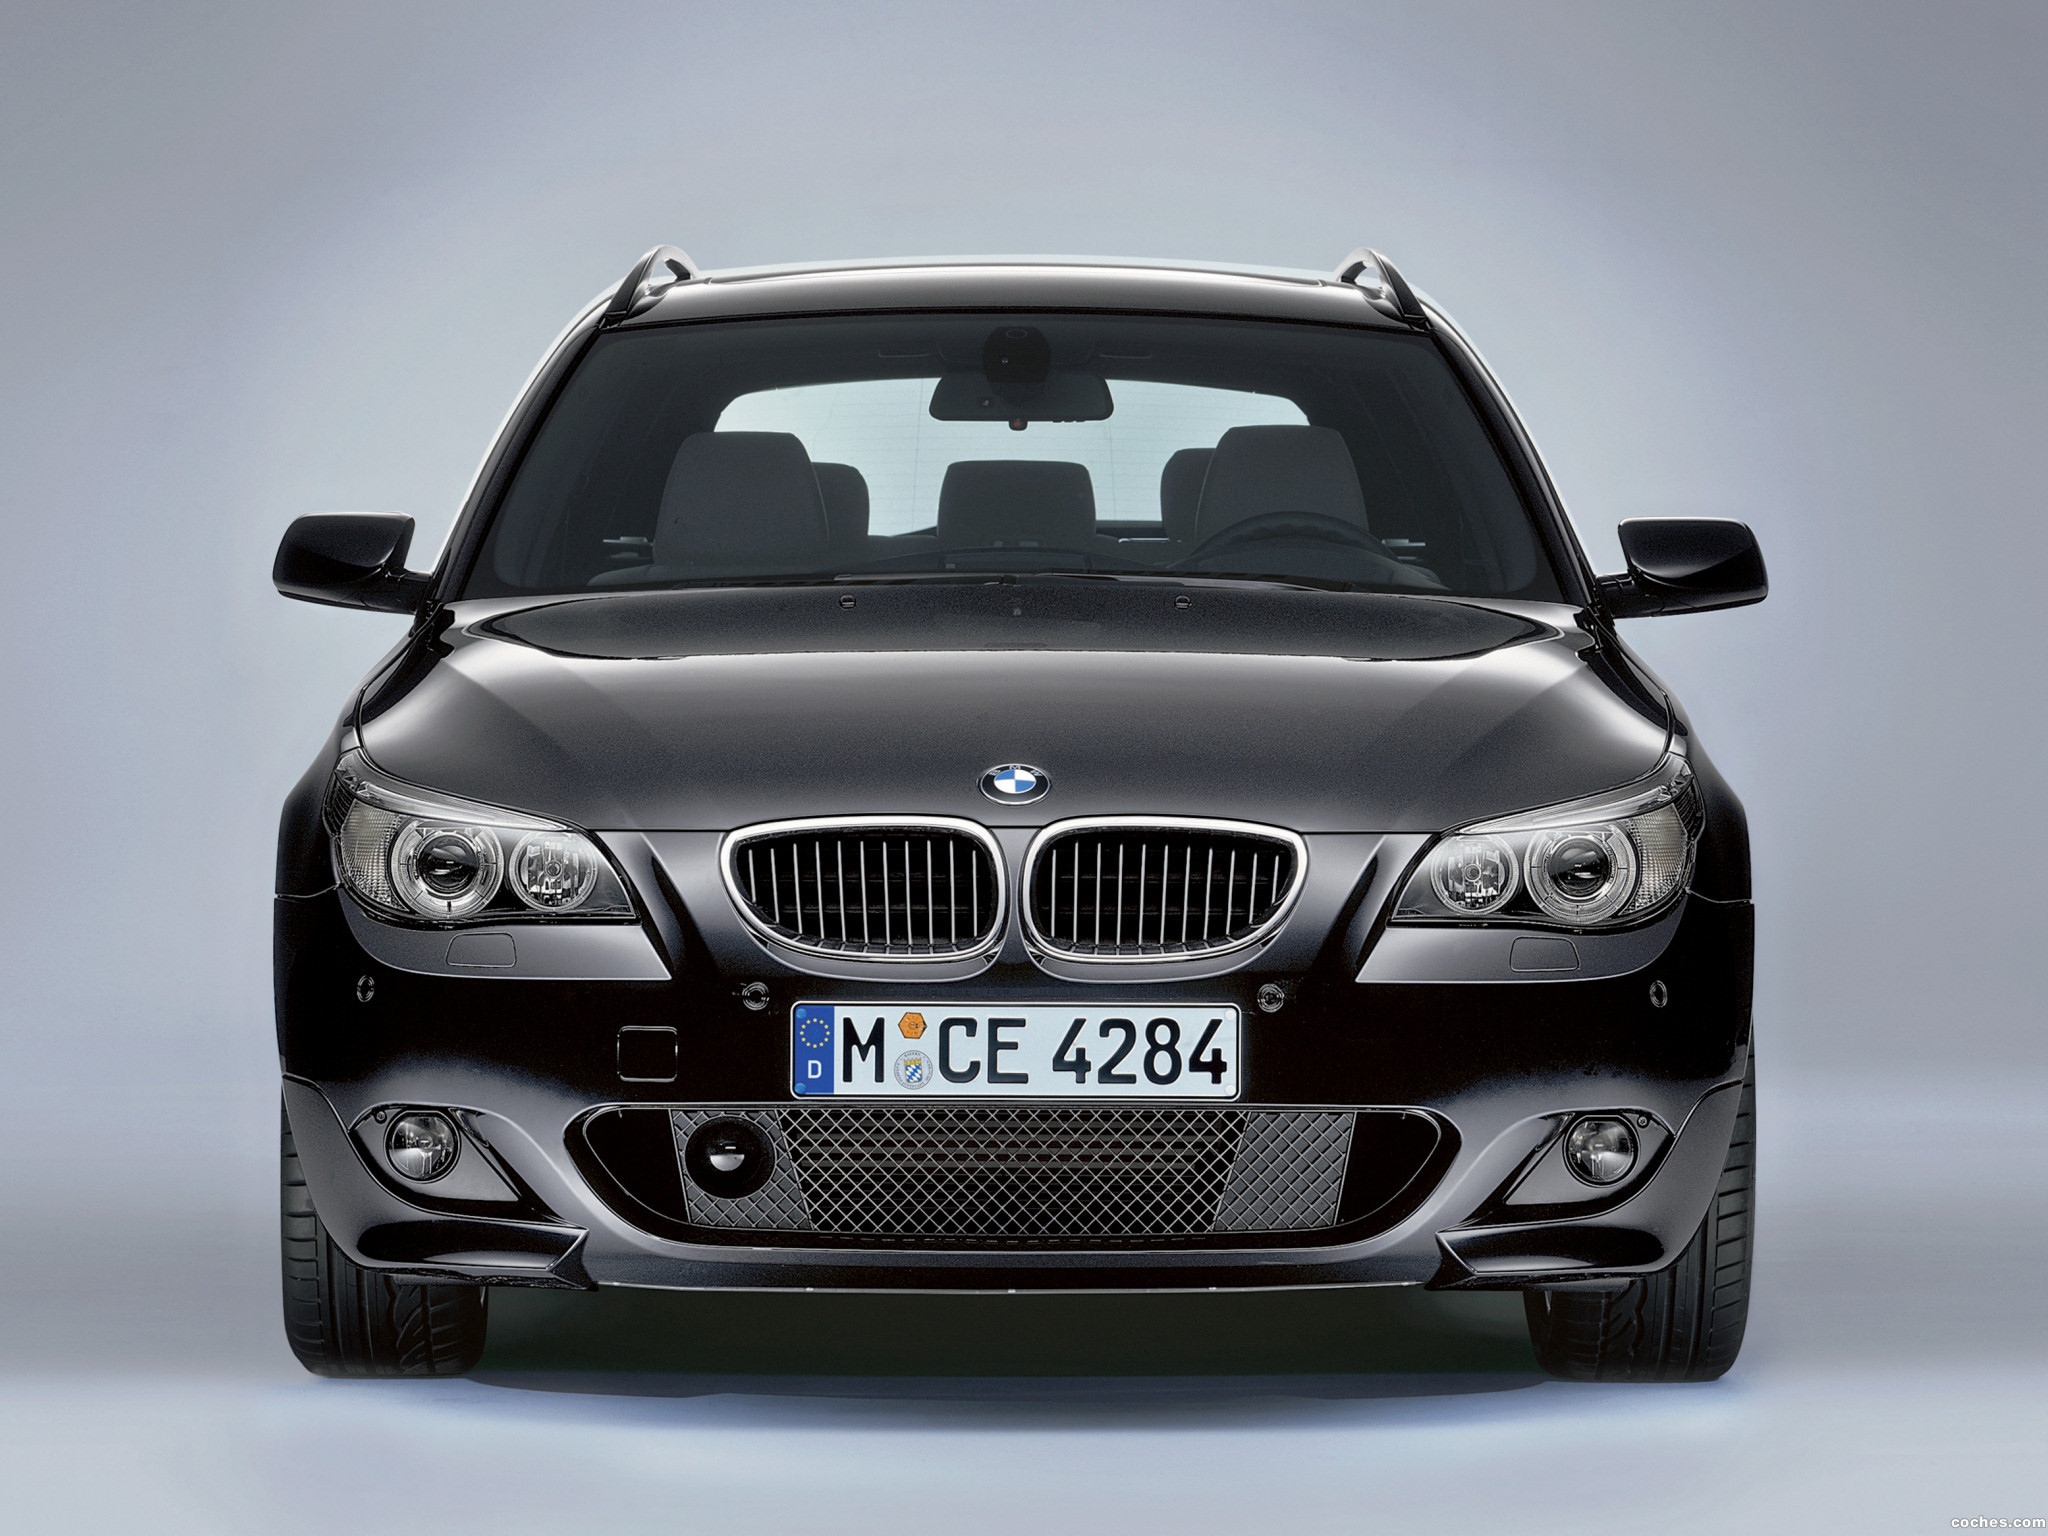 Купить bmw в германии. BMW e60 530d. BMW 5er. BMW e60 2003. БМВ 535d 2005.